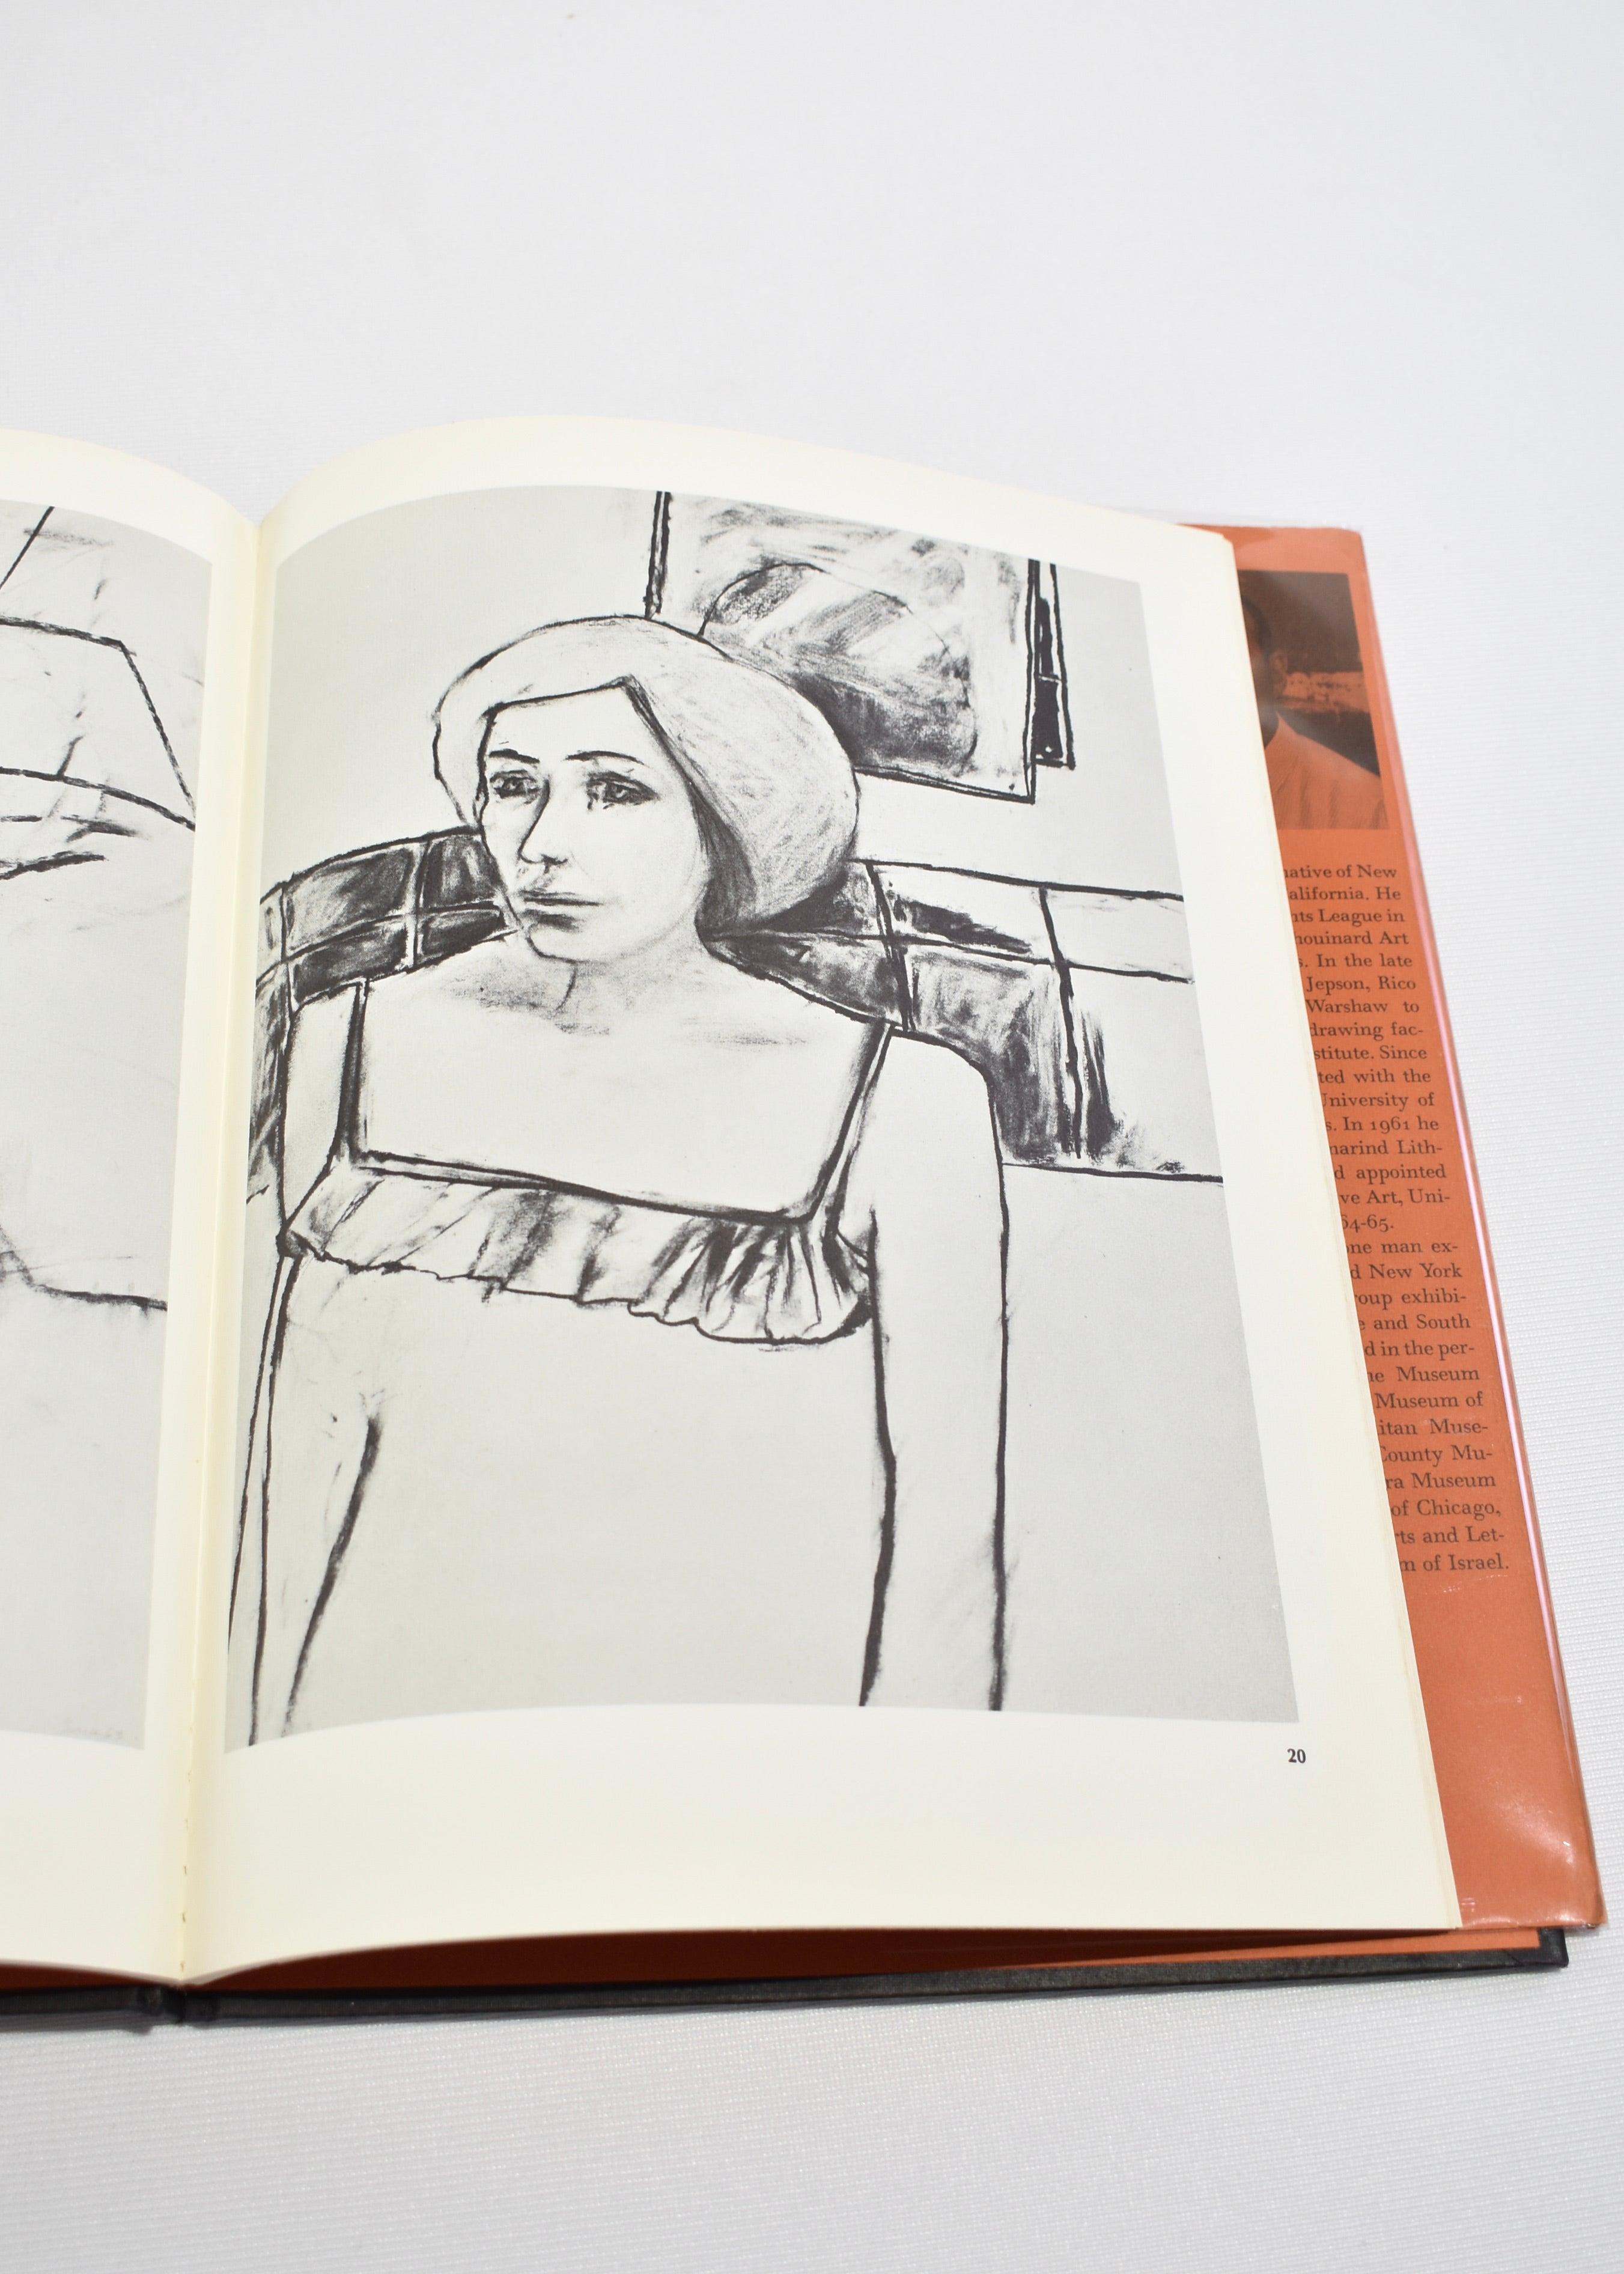 Livre de poche vintage présentant l'artiste William Brice et une sélection de ses dessins réalisés entre 1955 et 1966. Par Gerald Nordland et Thomas W. Leavitt, publié en 1967. Première édition, 40 pages.

